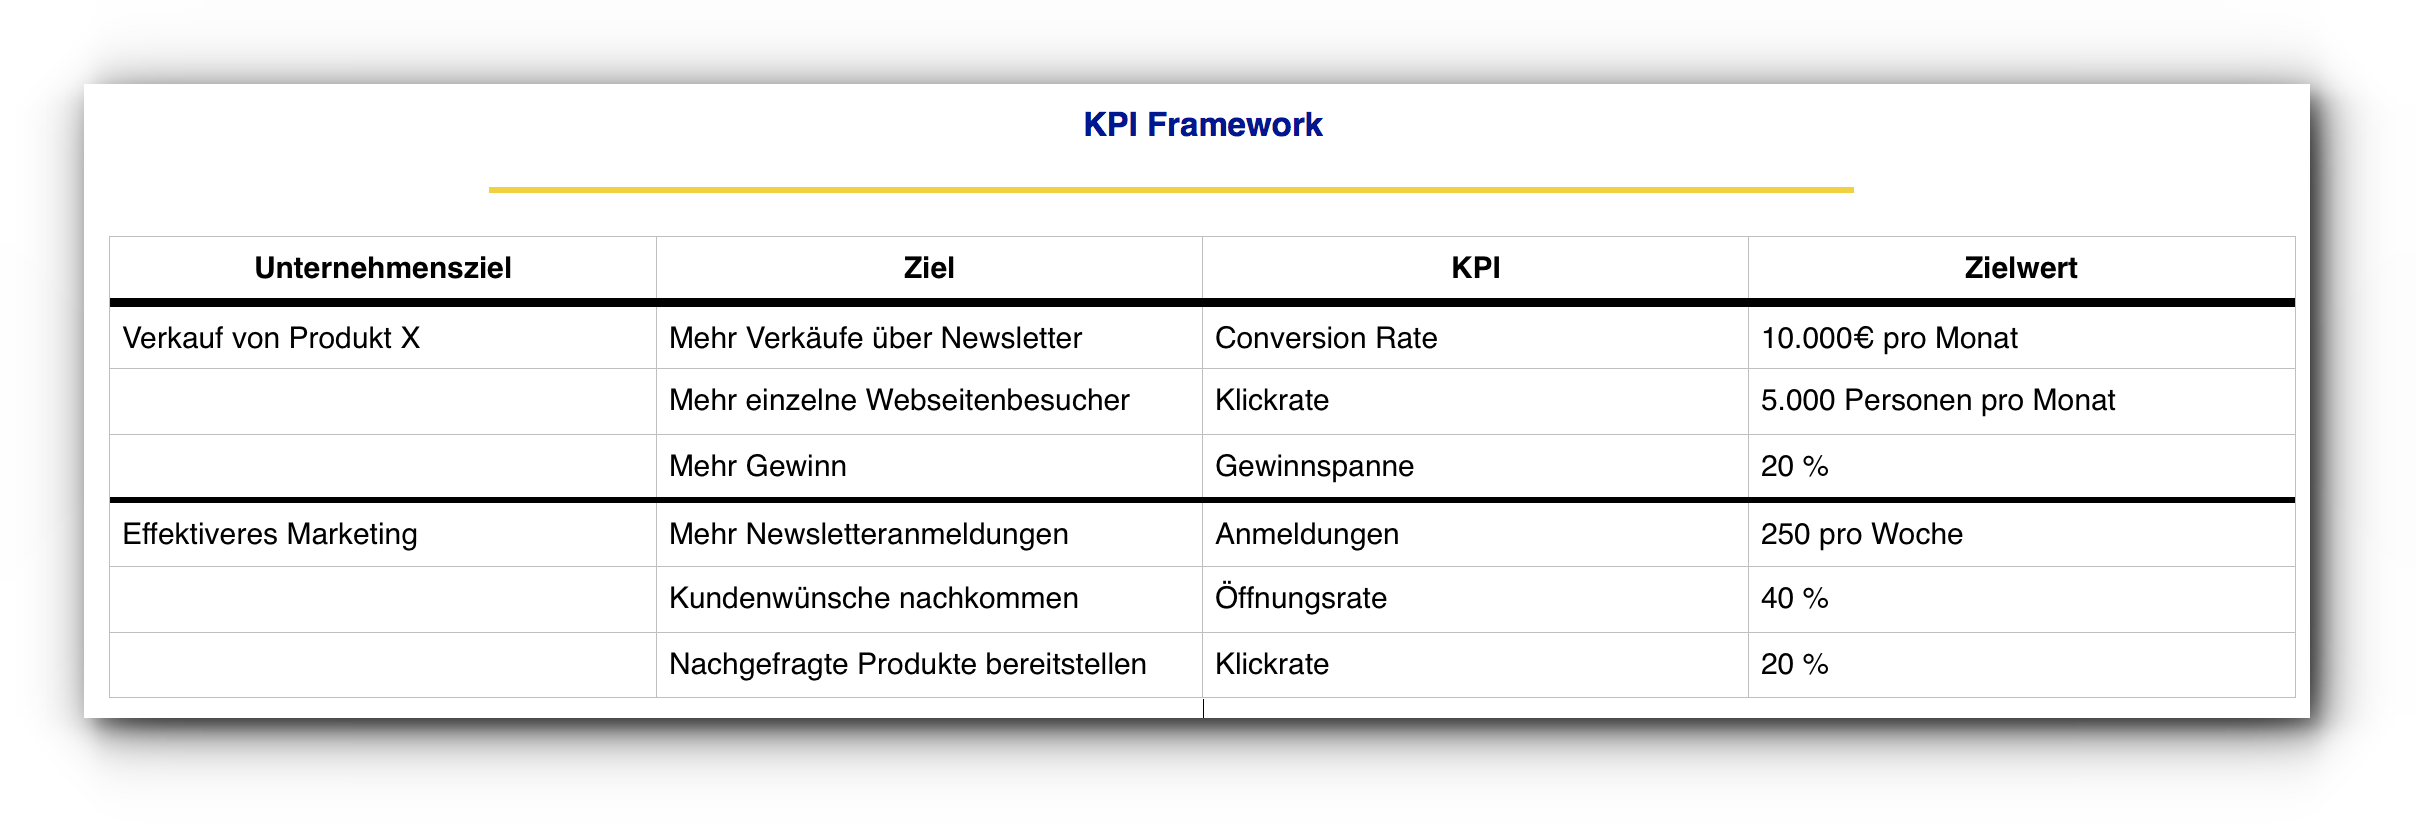 KPI-Framework